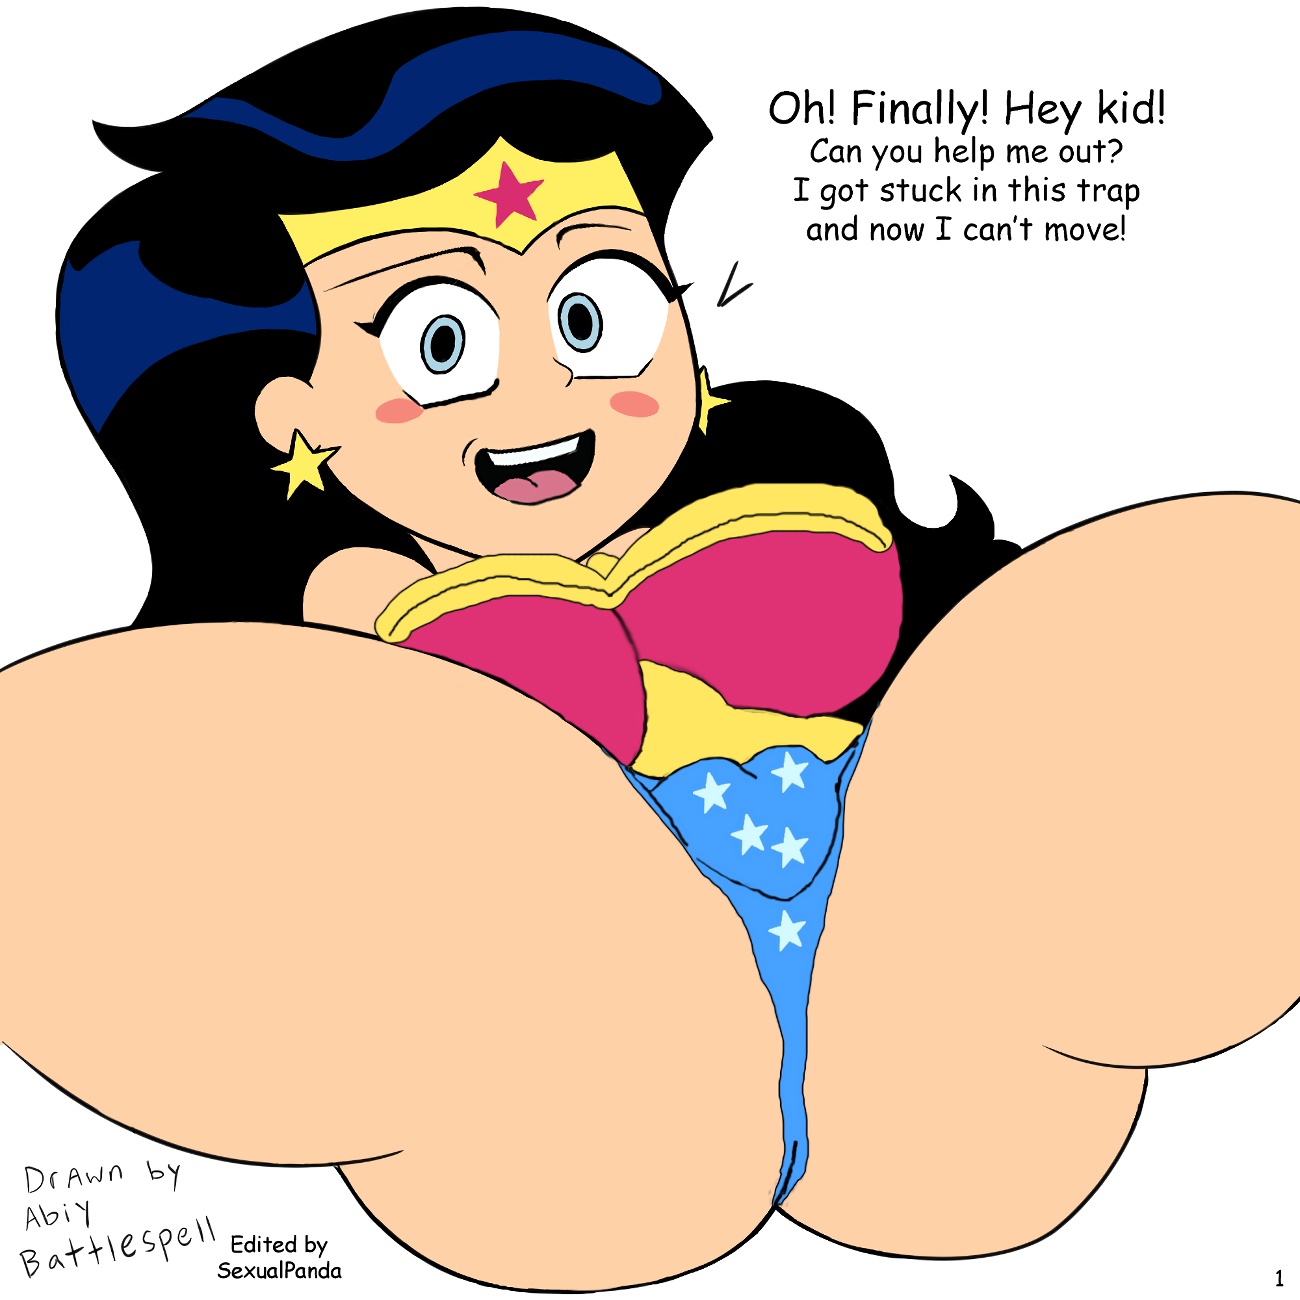 Women porn wonder Wonder Woman